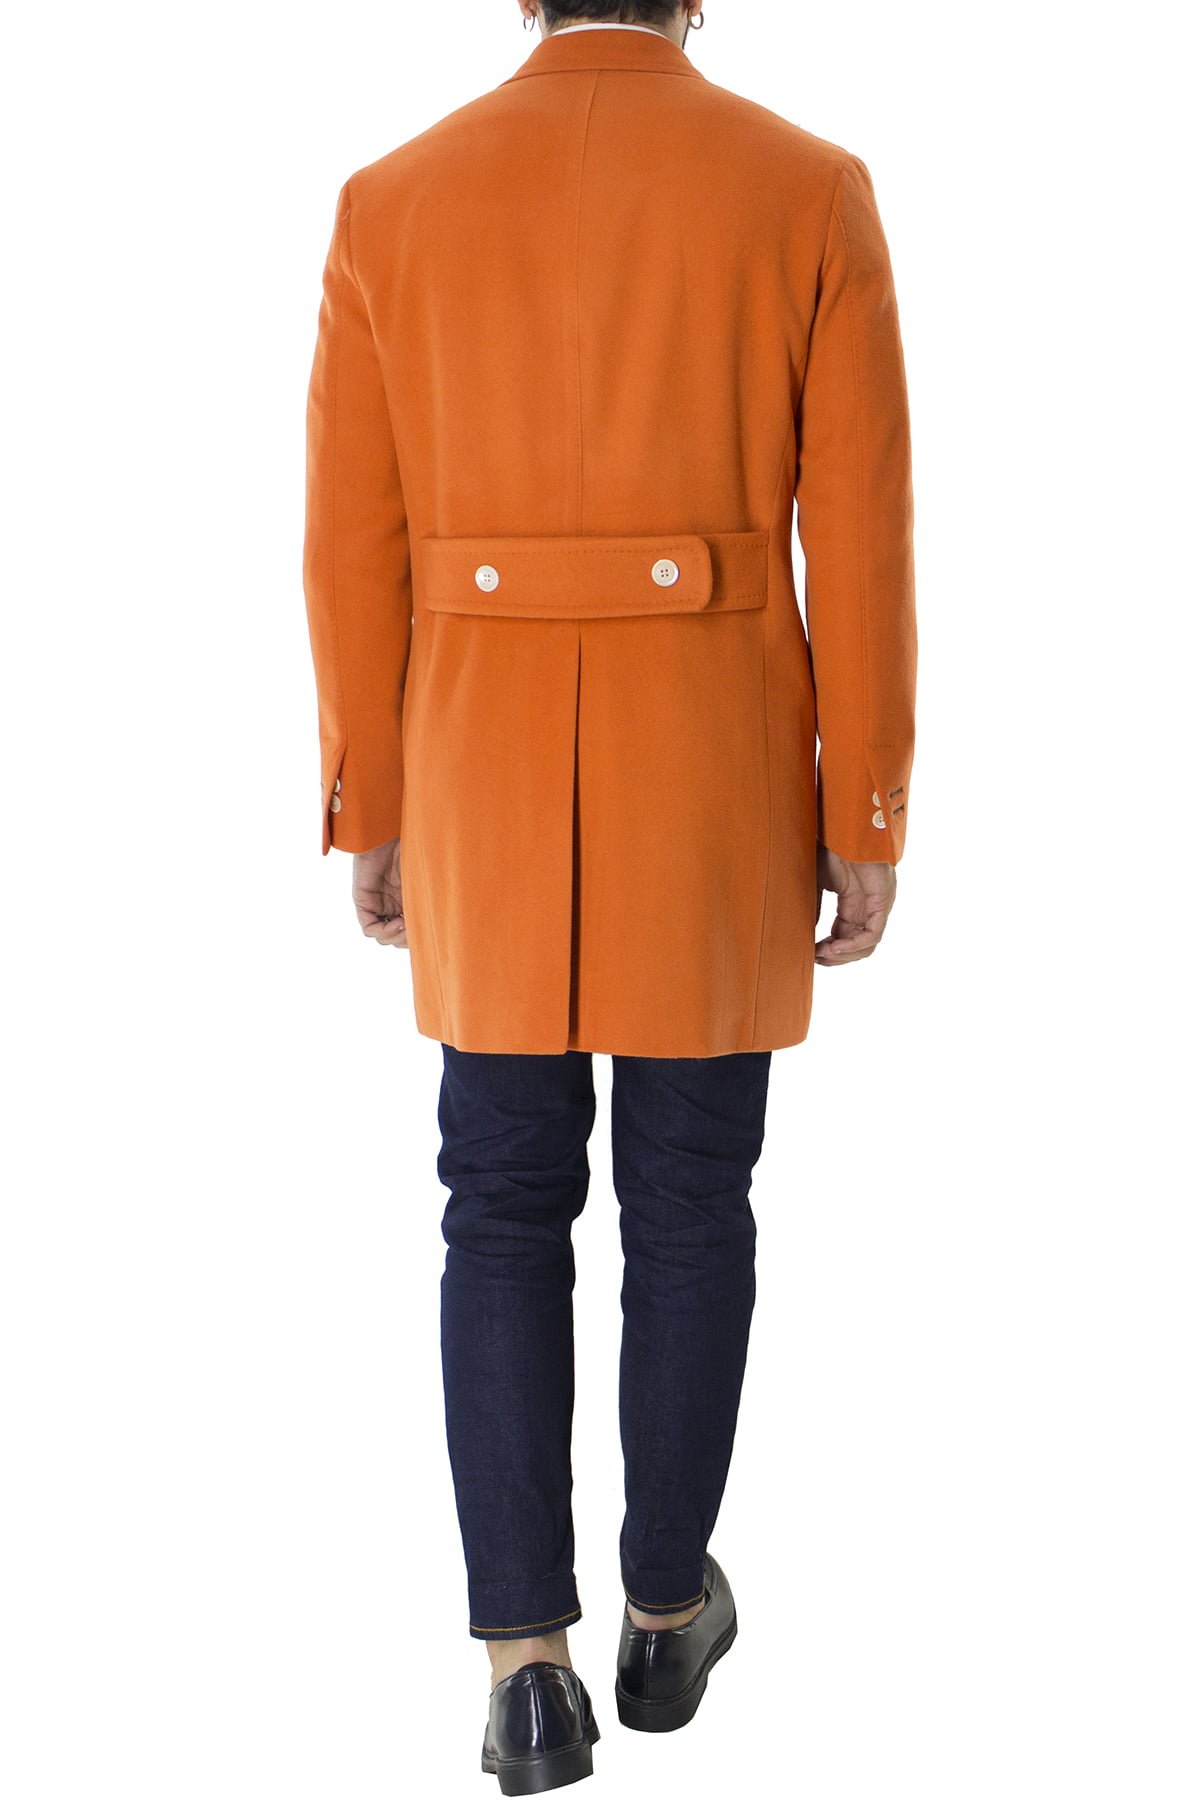 Cappotto uomo arancio doppiopetto in lana rever largo made in italy